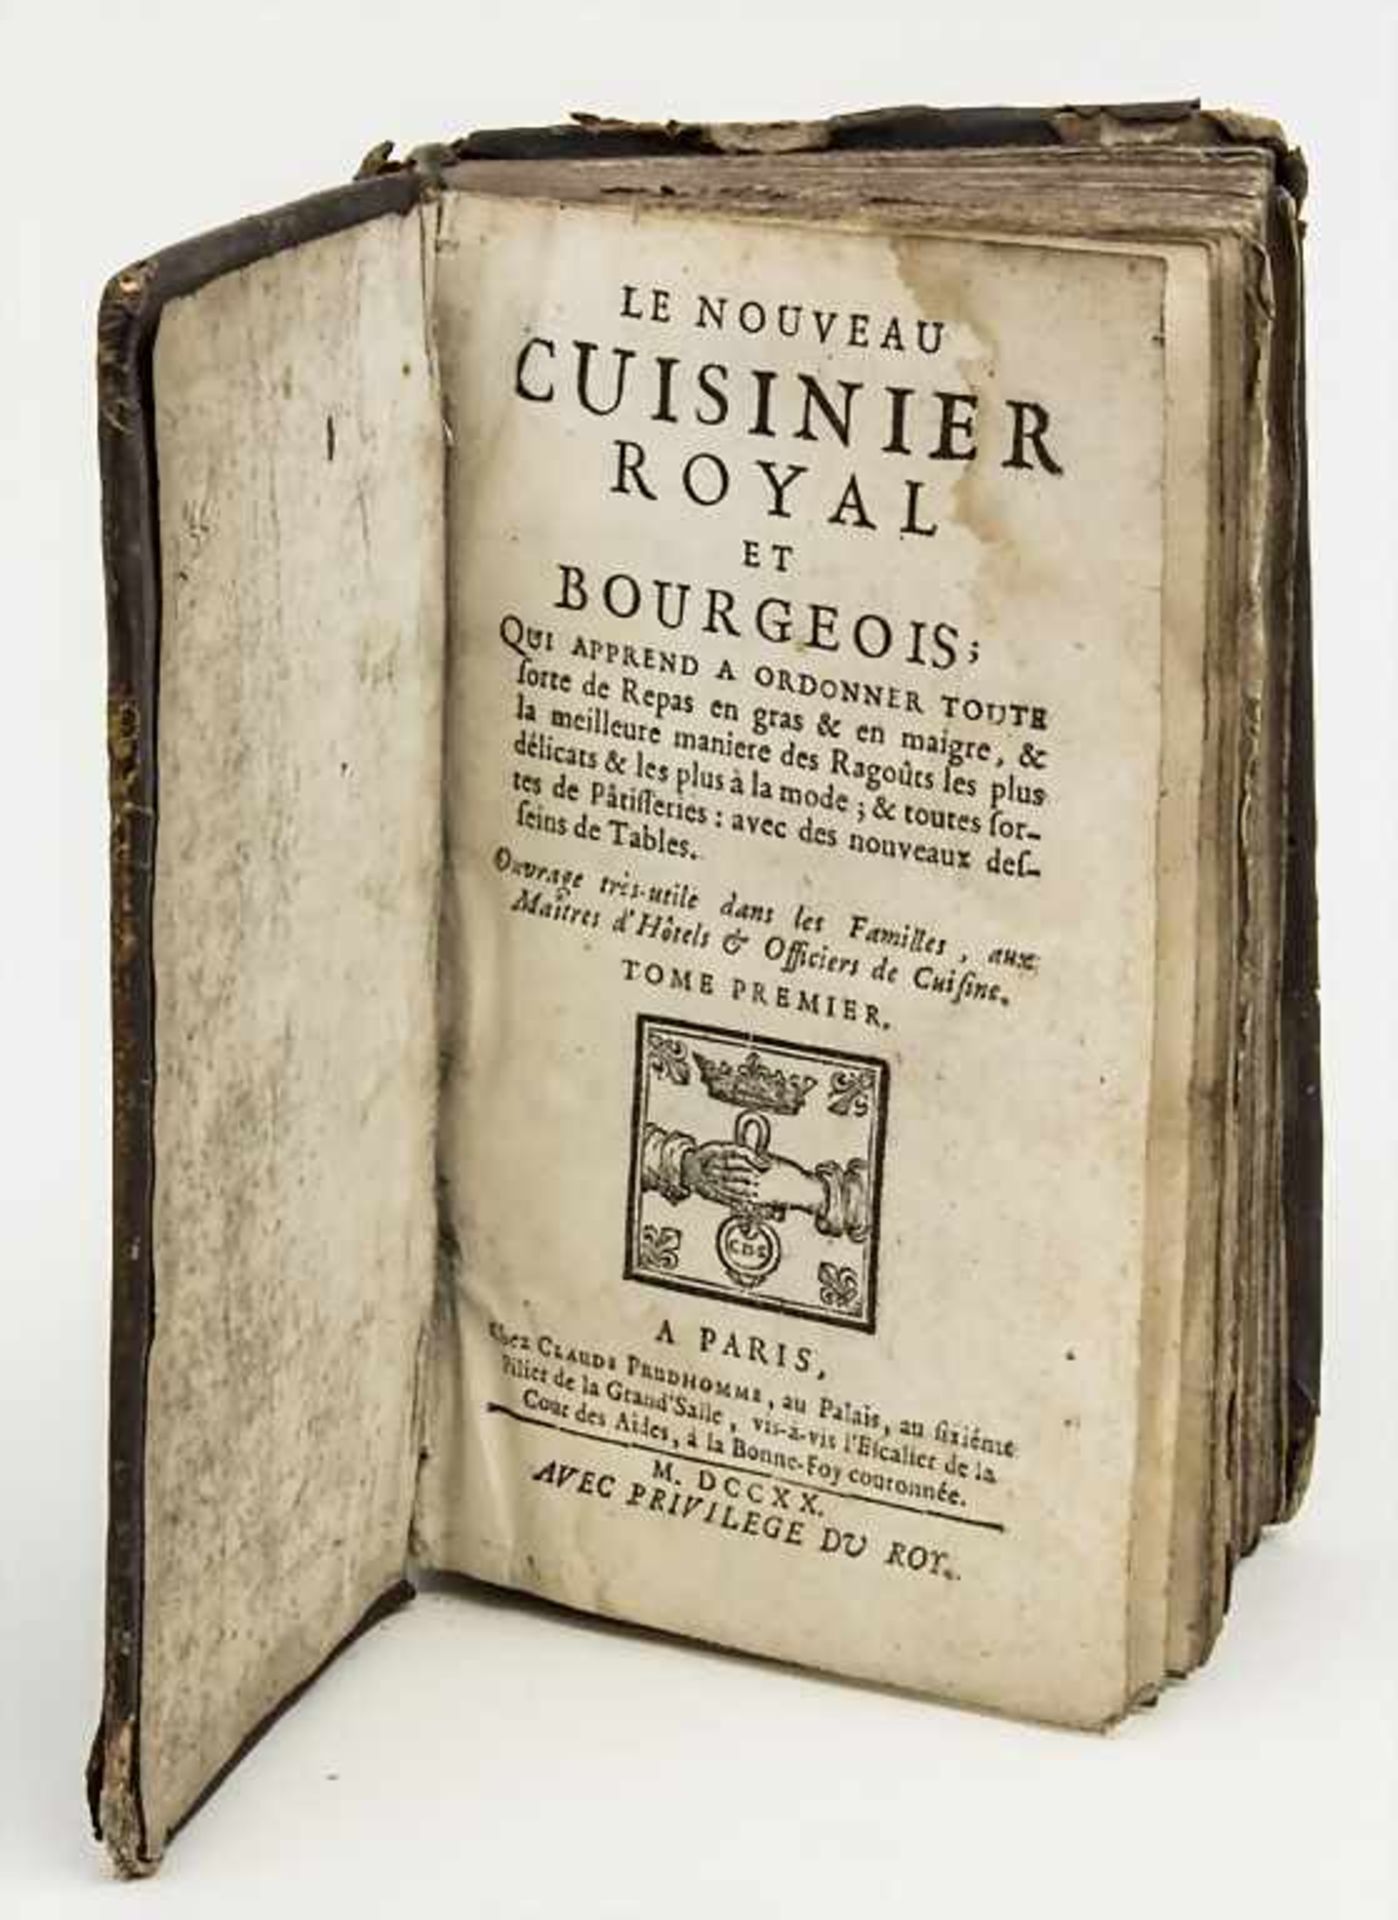 Kochbuch Band 1 'LE NOUVEAU CUISINIER ROYAL ET BOURGEOIS' / cookbook, 1st edition, François